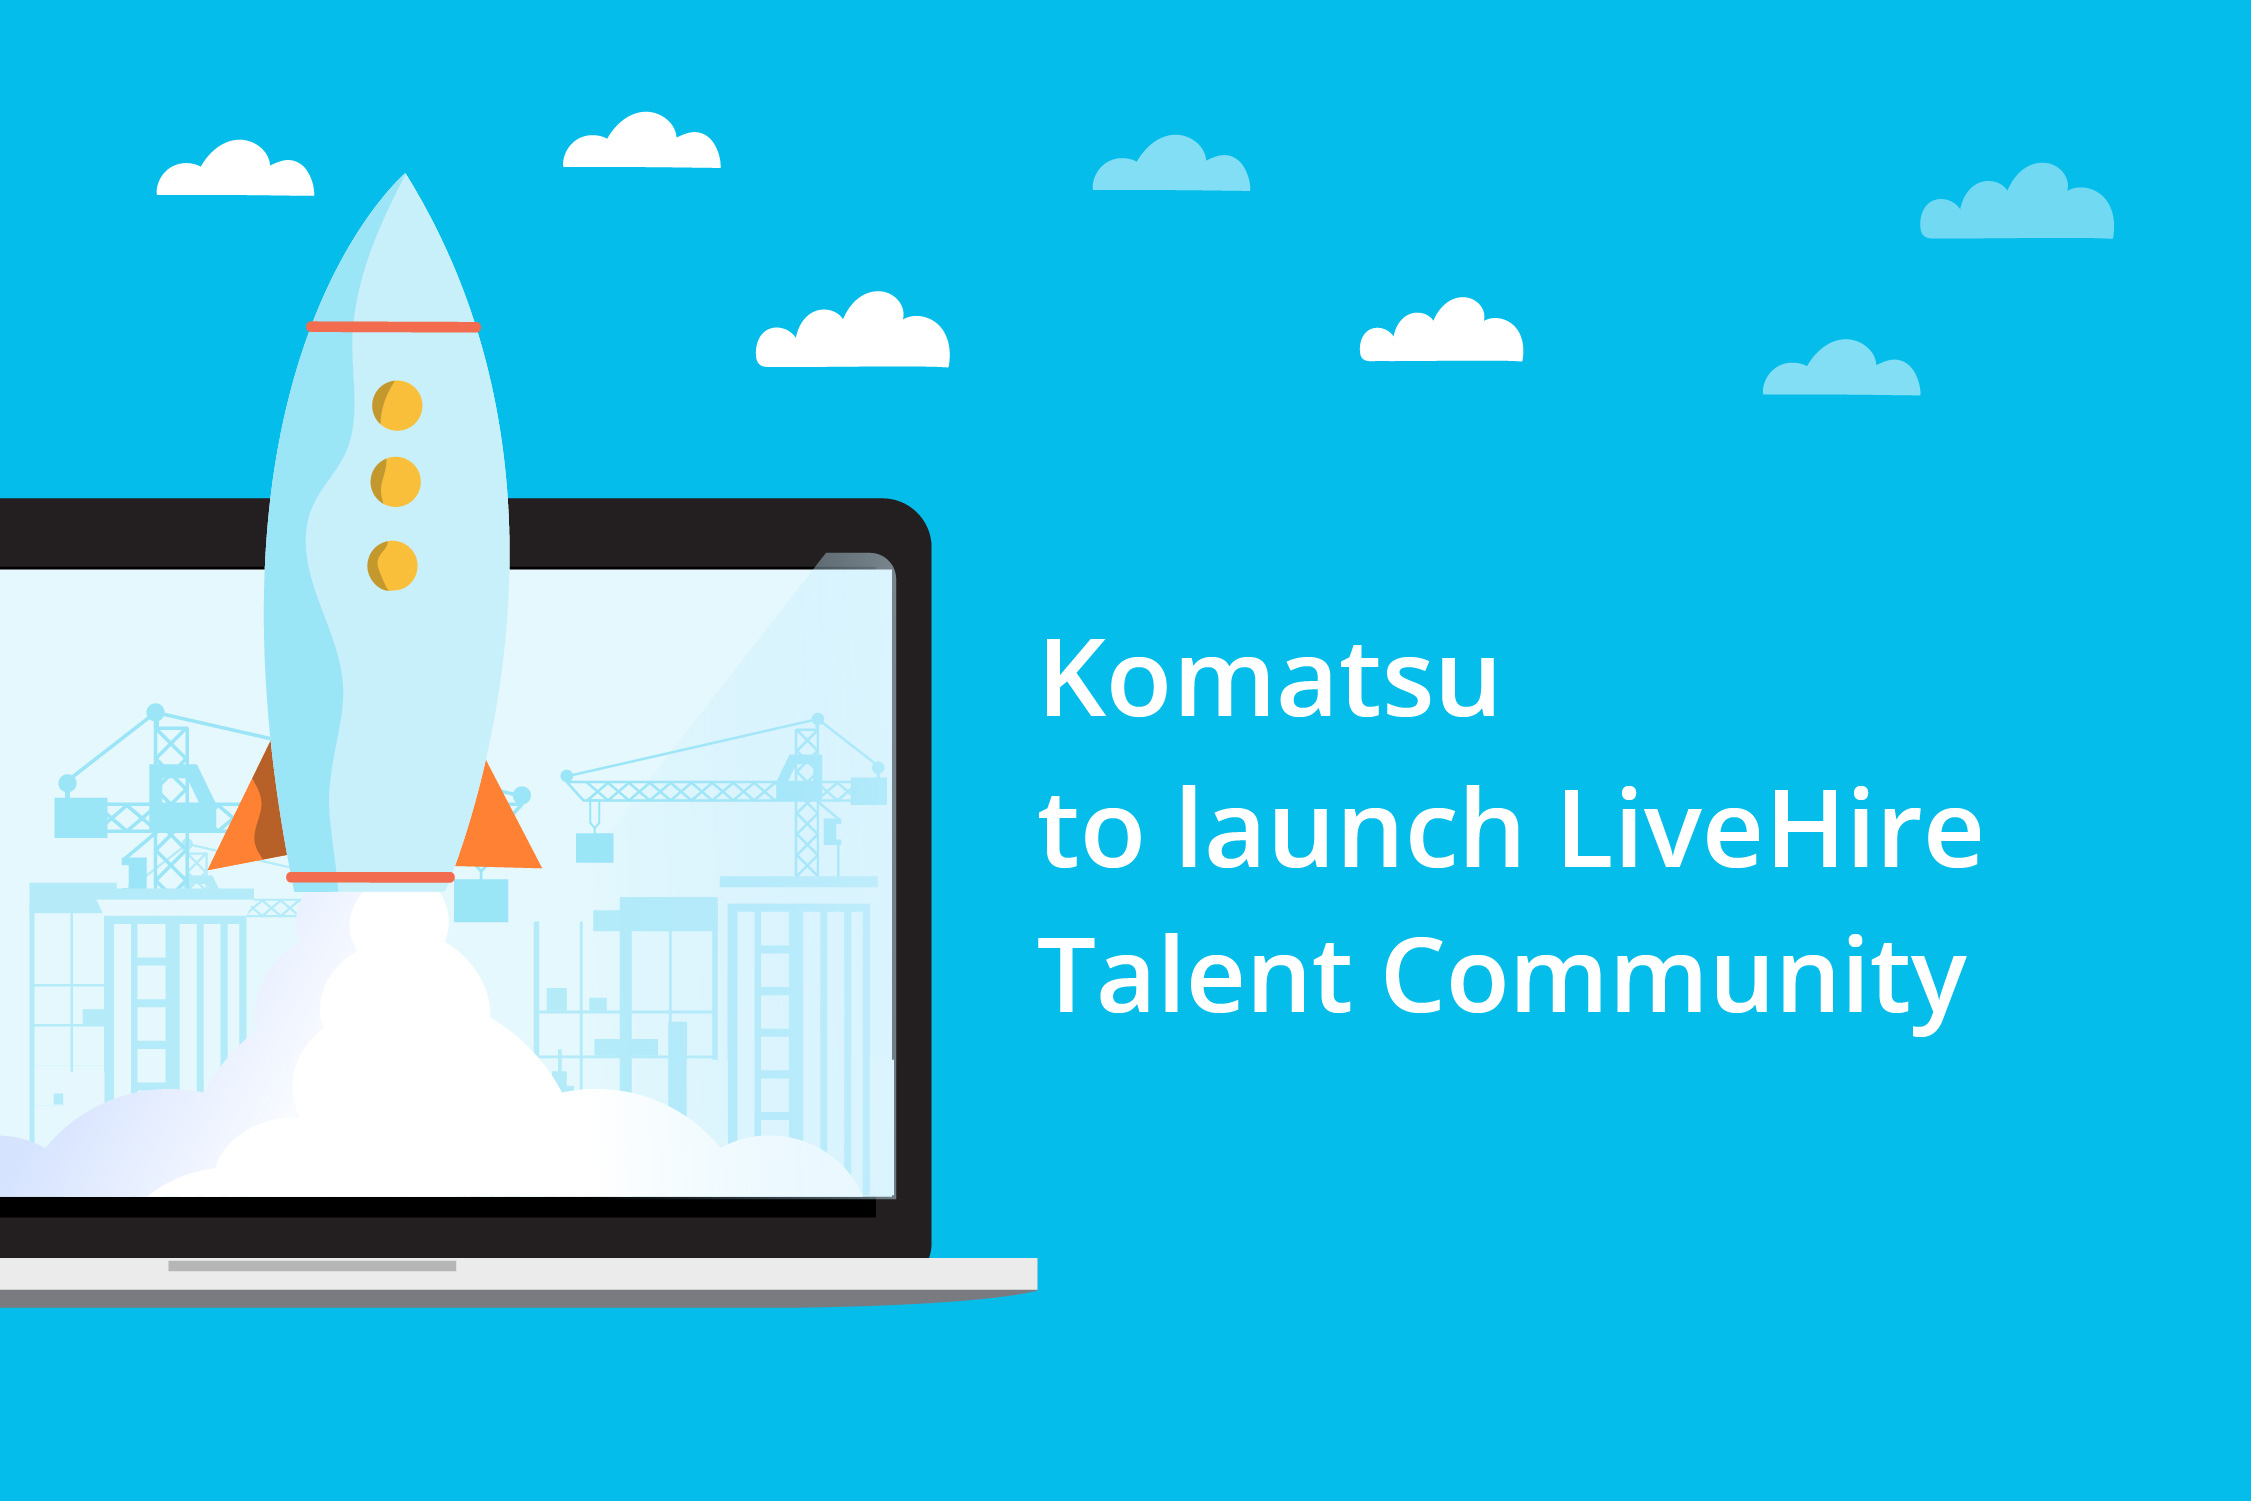 Komatsu to launch LiveHire Talent Community